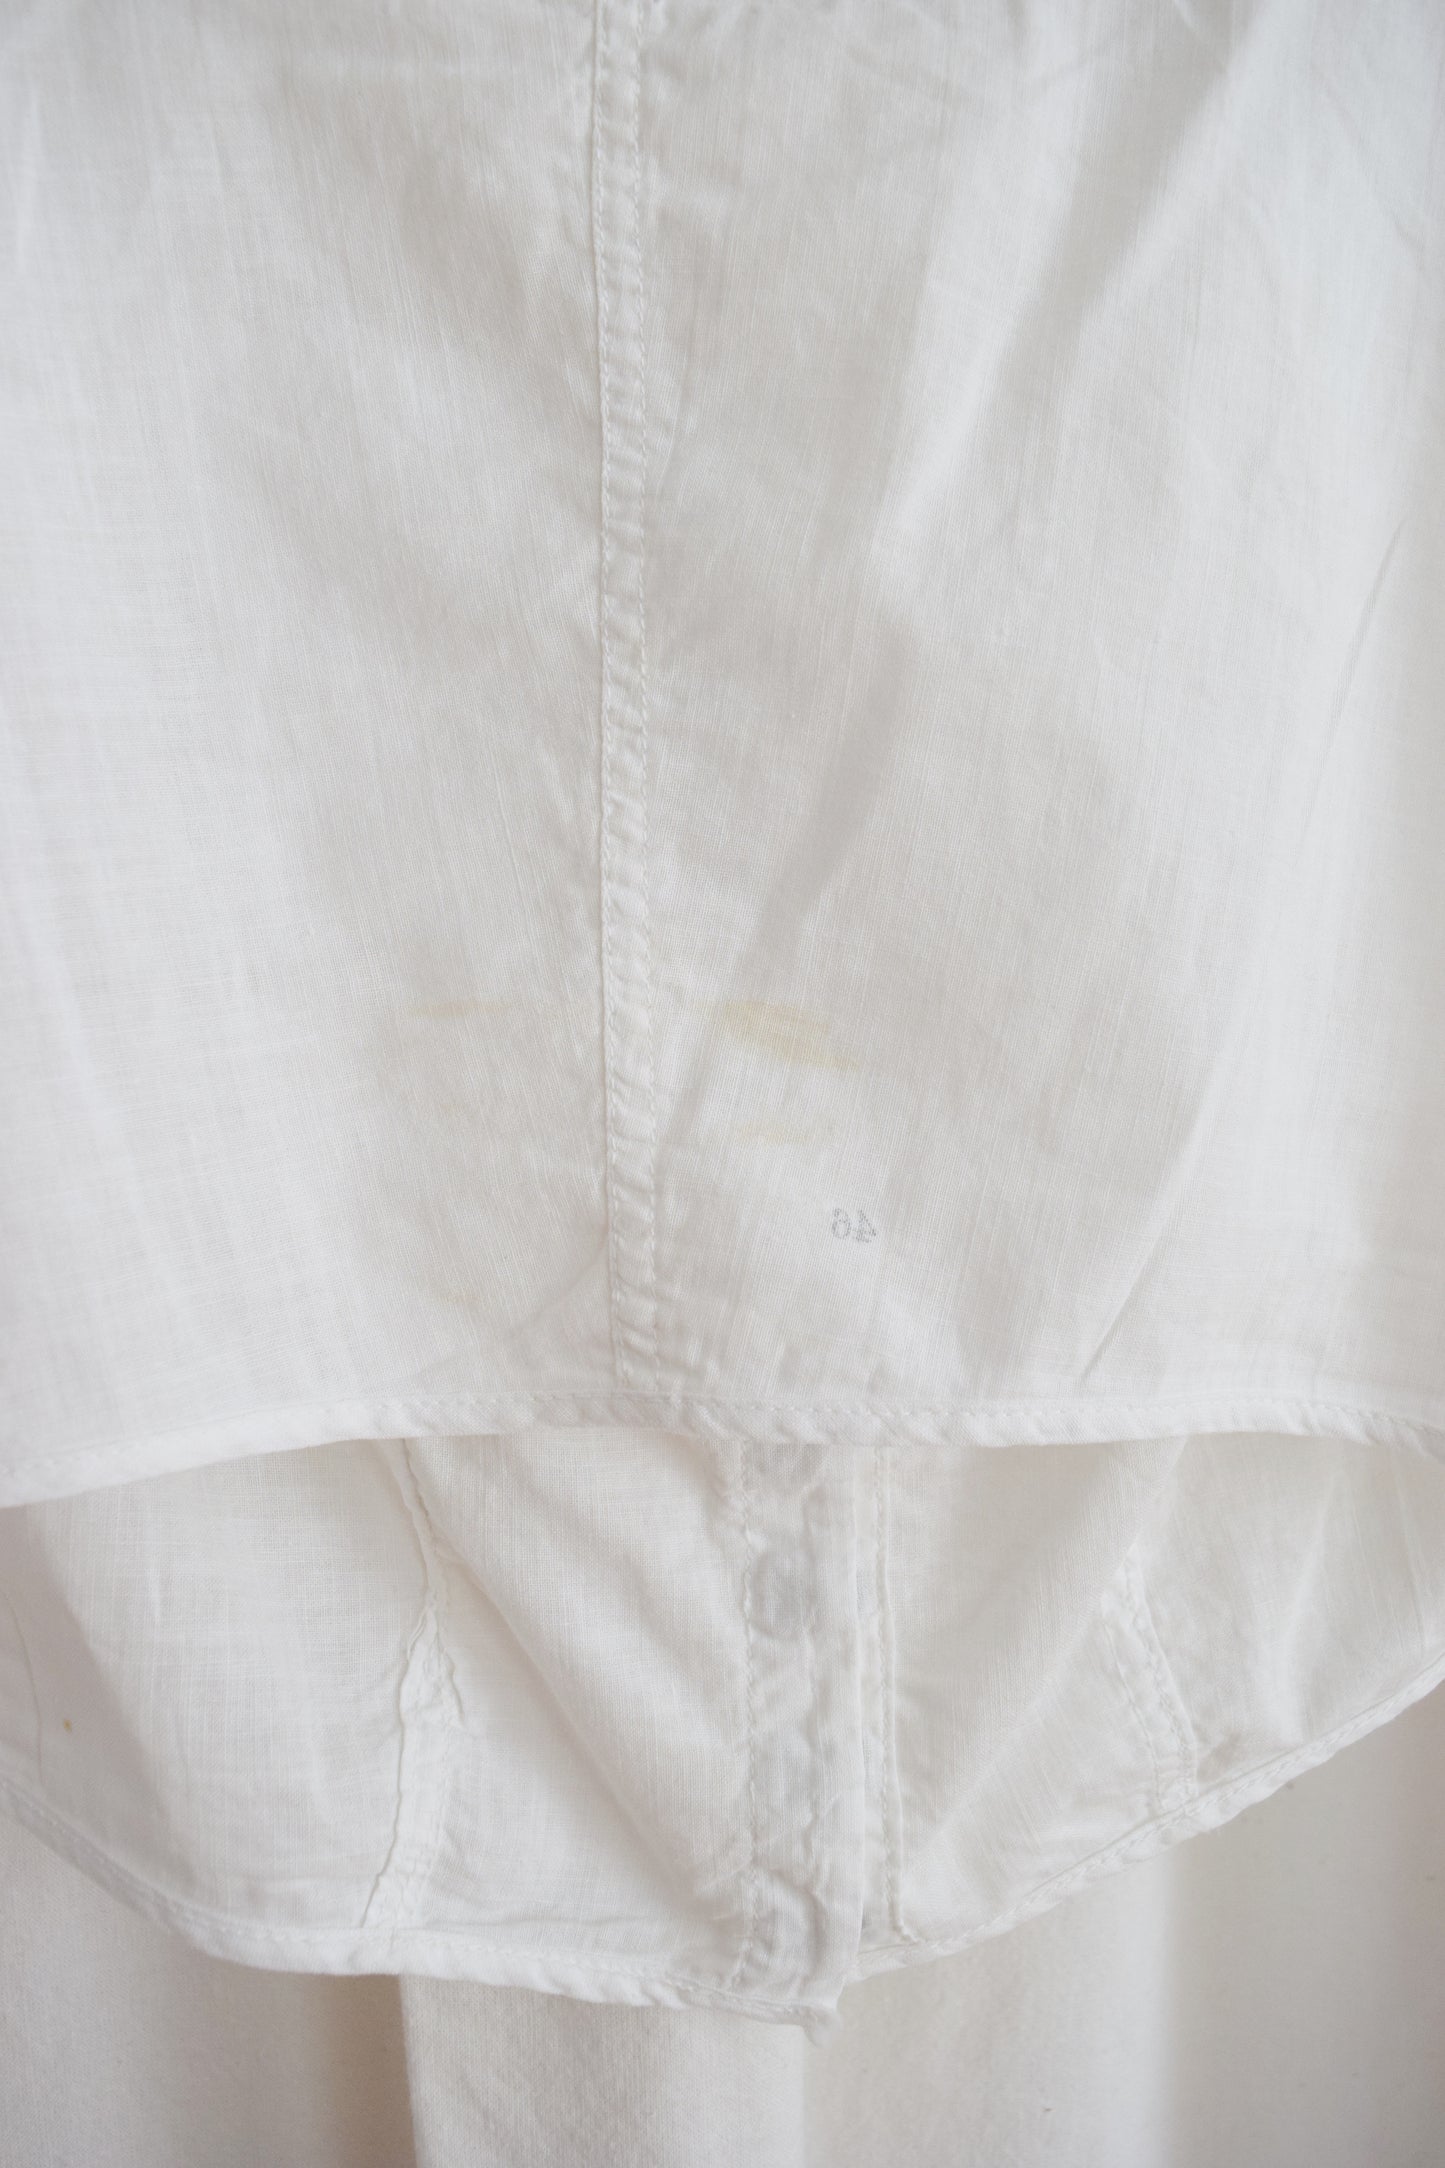 Edwardian Era Corset Cover / Antique Cotton Blouse